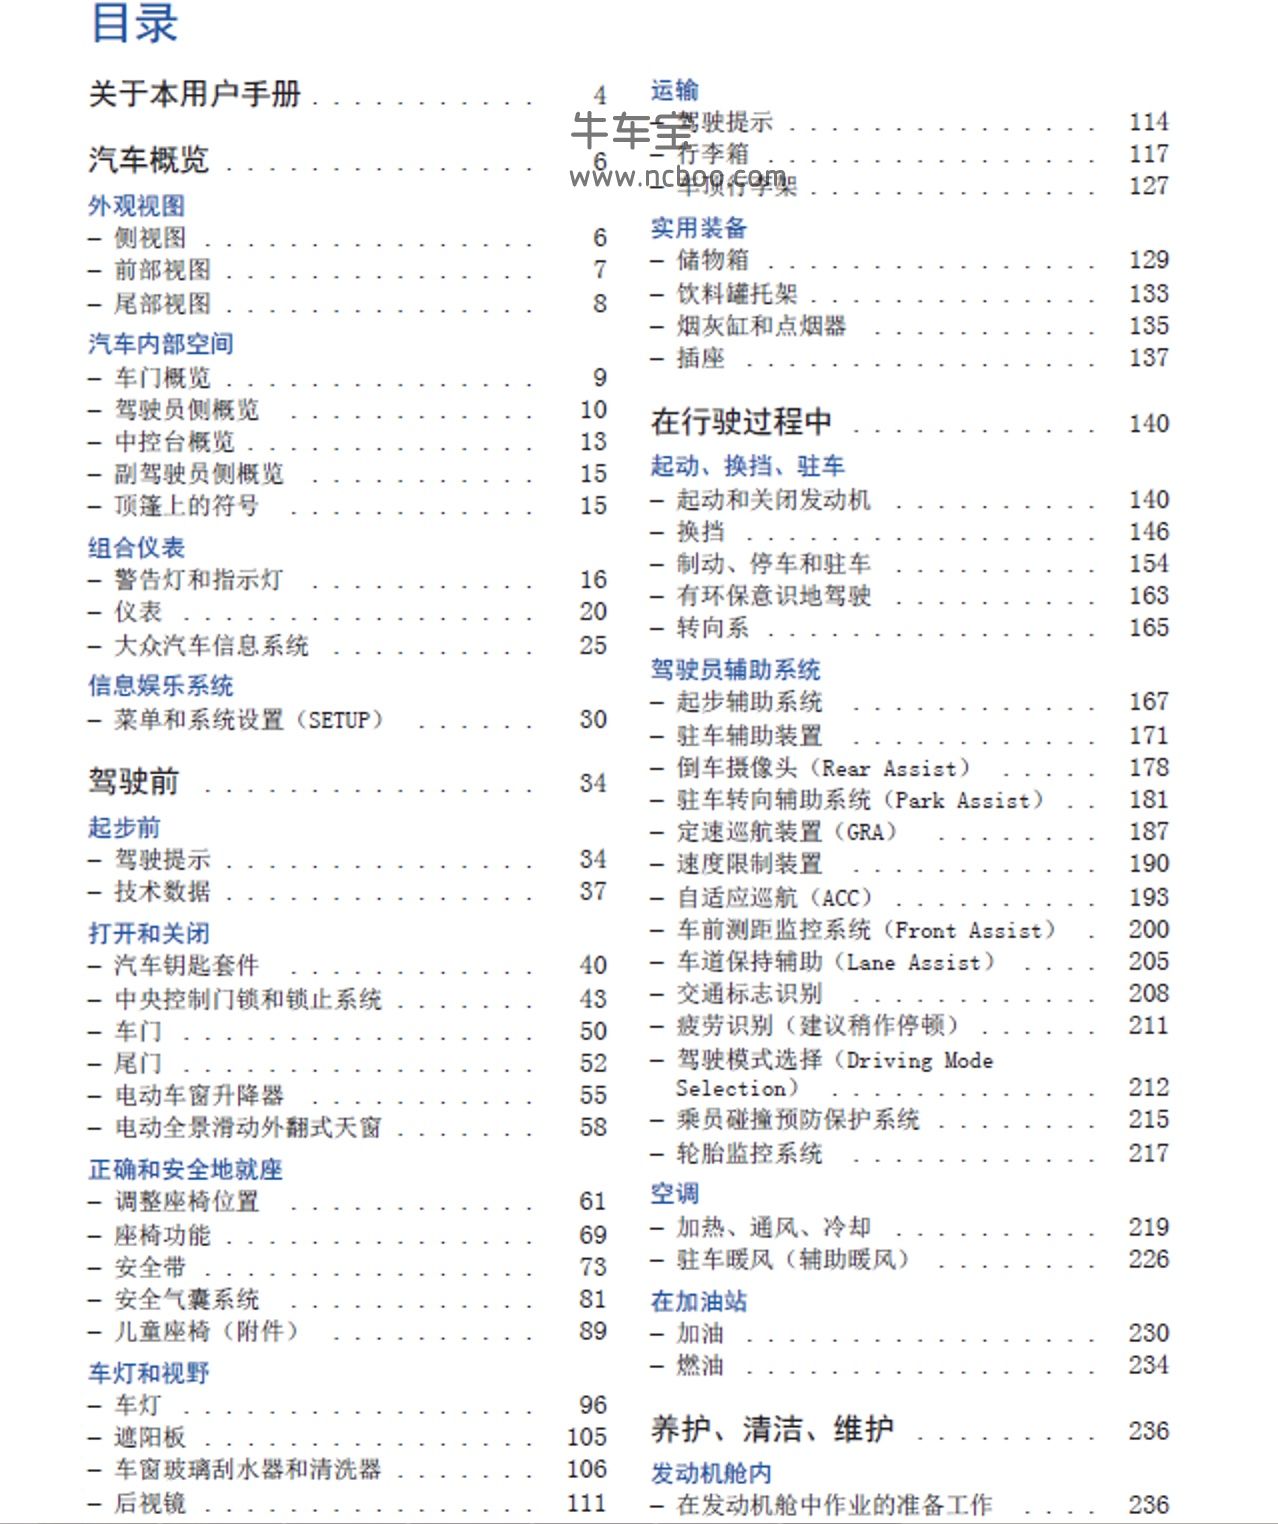 2014款大众高尔夫旅行轿车用户手册-产品使用说明书pdf下载